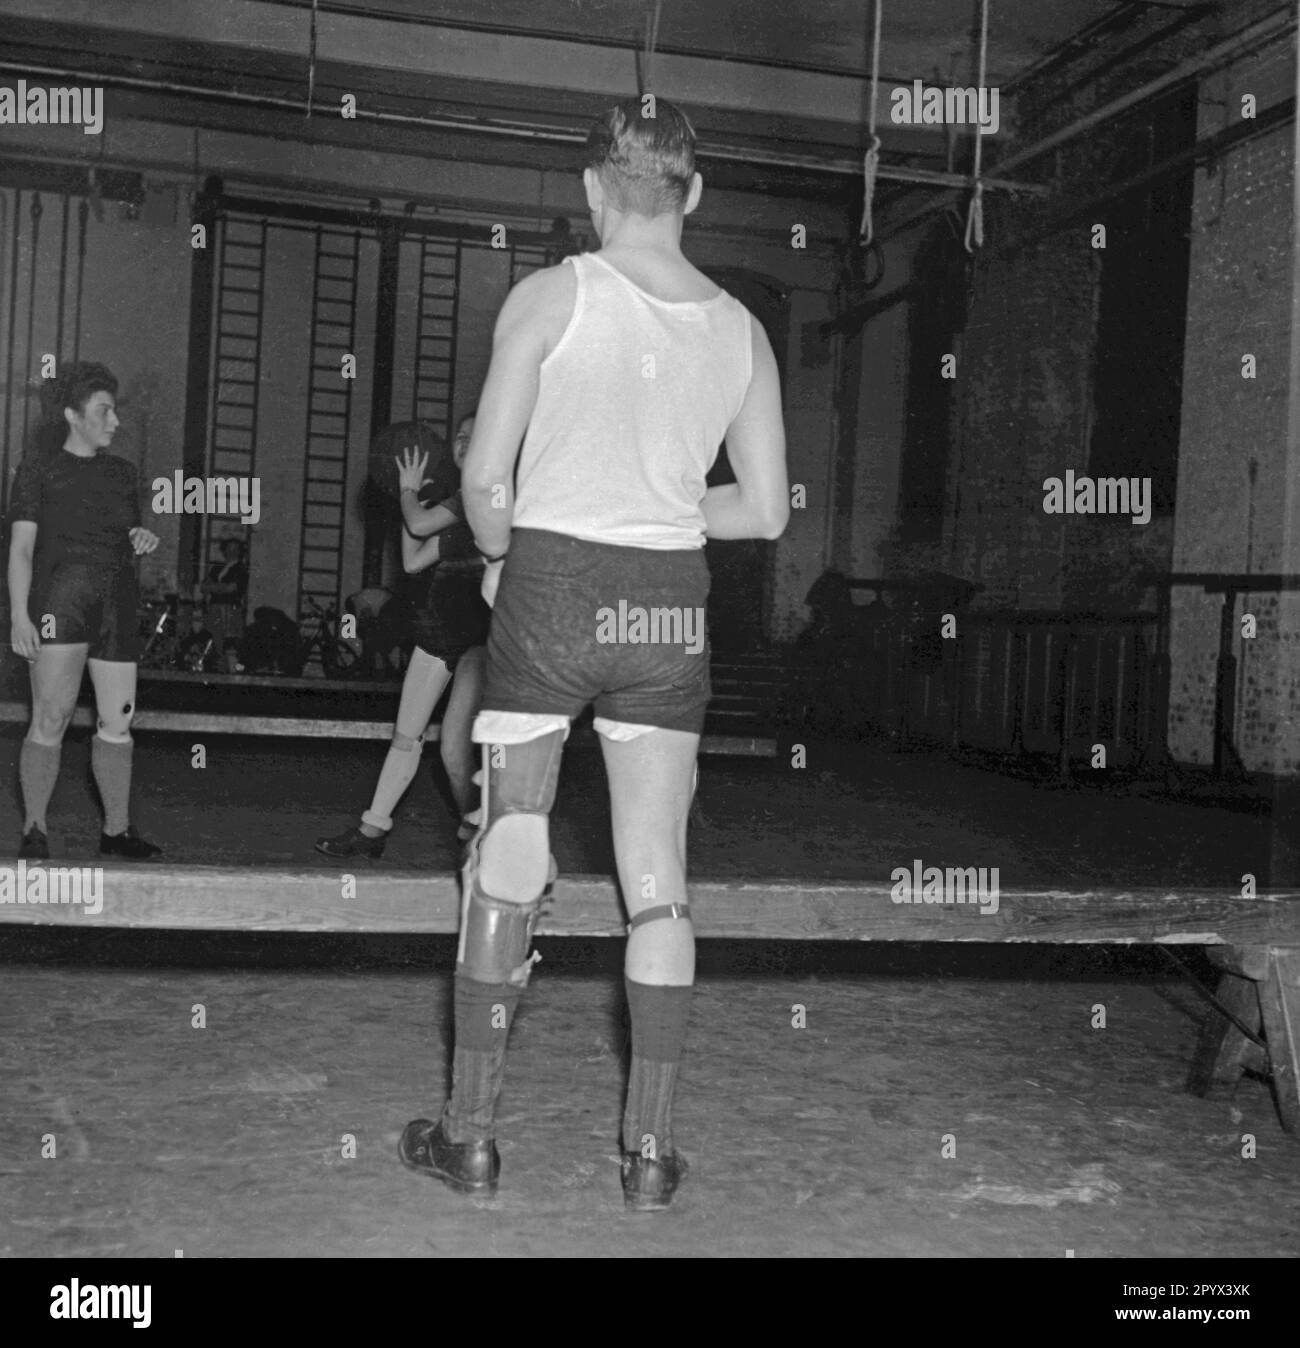 Photo non datée des amputés de jambes lors d'un exercice de réadaptation dans une salle de sport à Berlin, probablement Berlin-Ouest, 1950. Les deux femmes et un homme dans les vêtements de sport ont des jambes artificielles, et se lancent un ballon de médecine pendant un exercice de renforcement. Banque D'Images